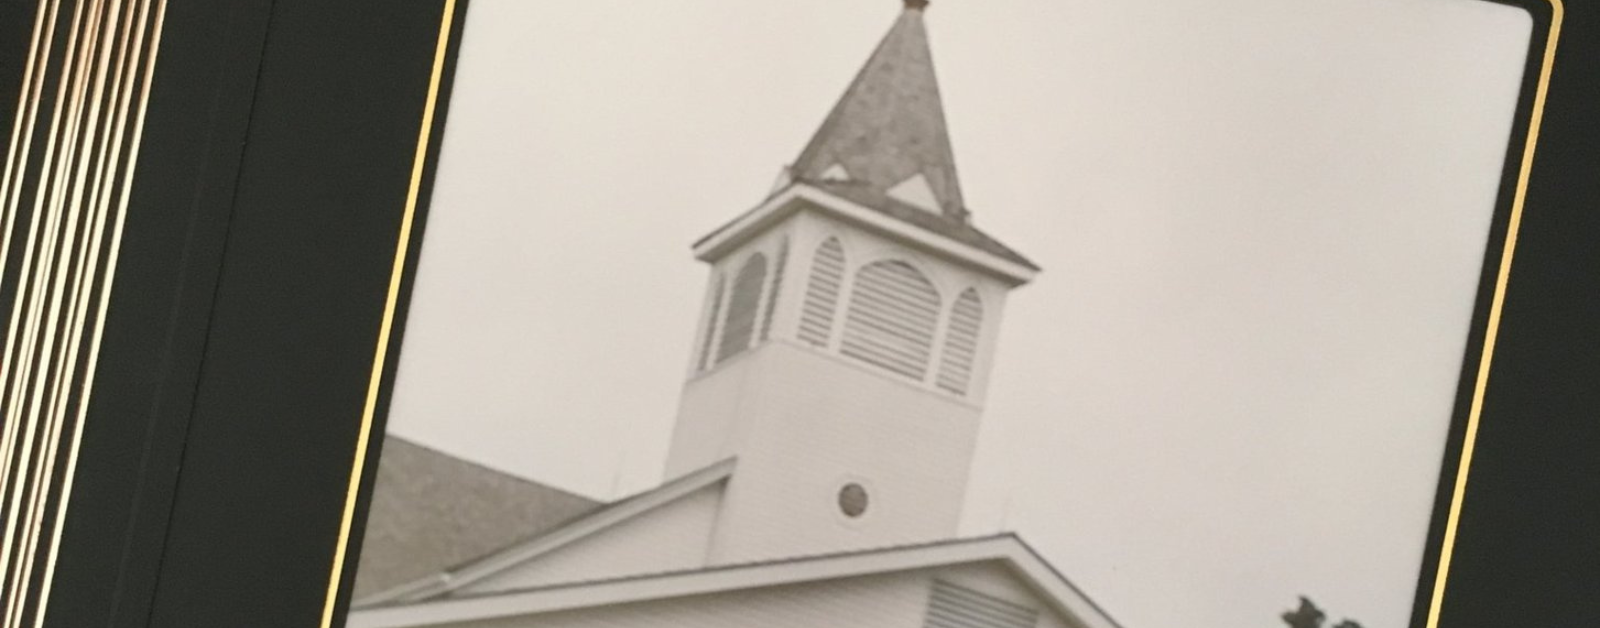 photo of a church in a photo album